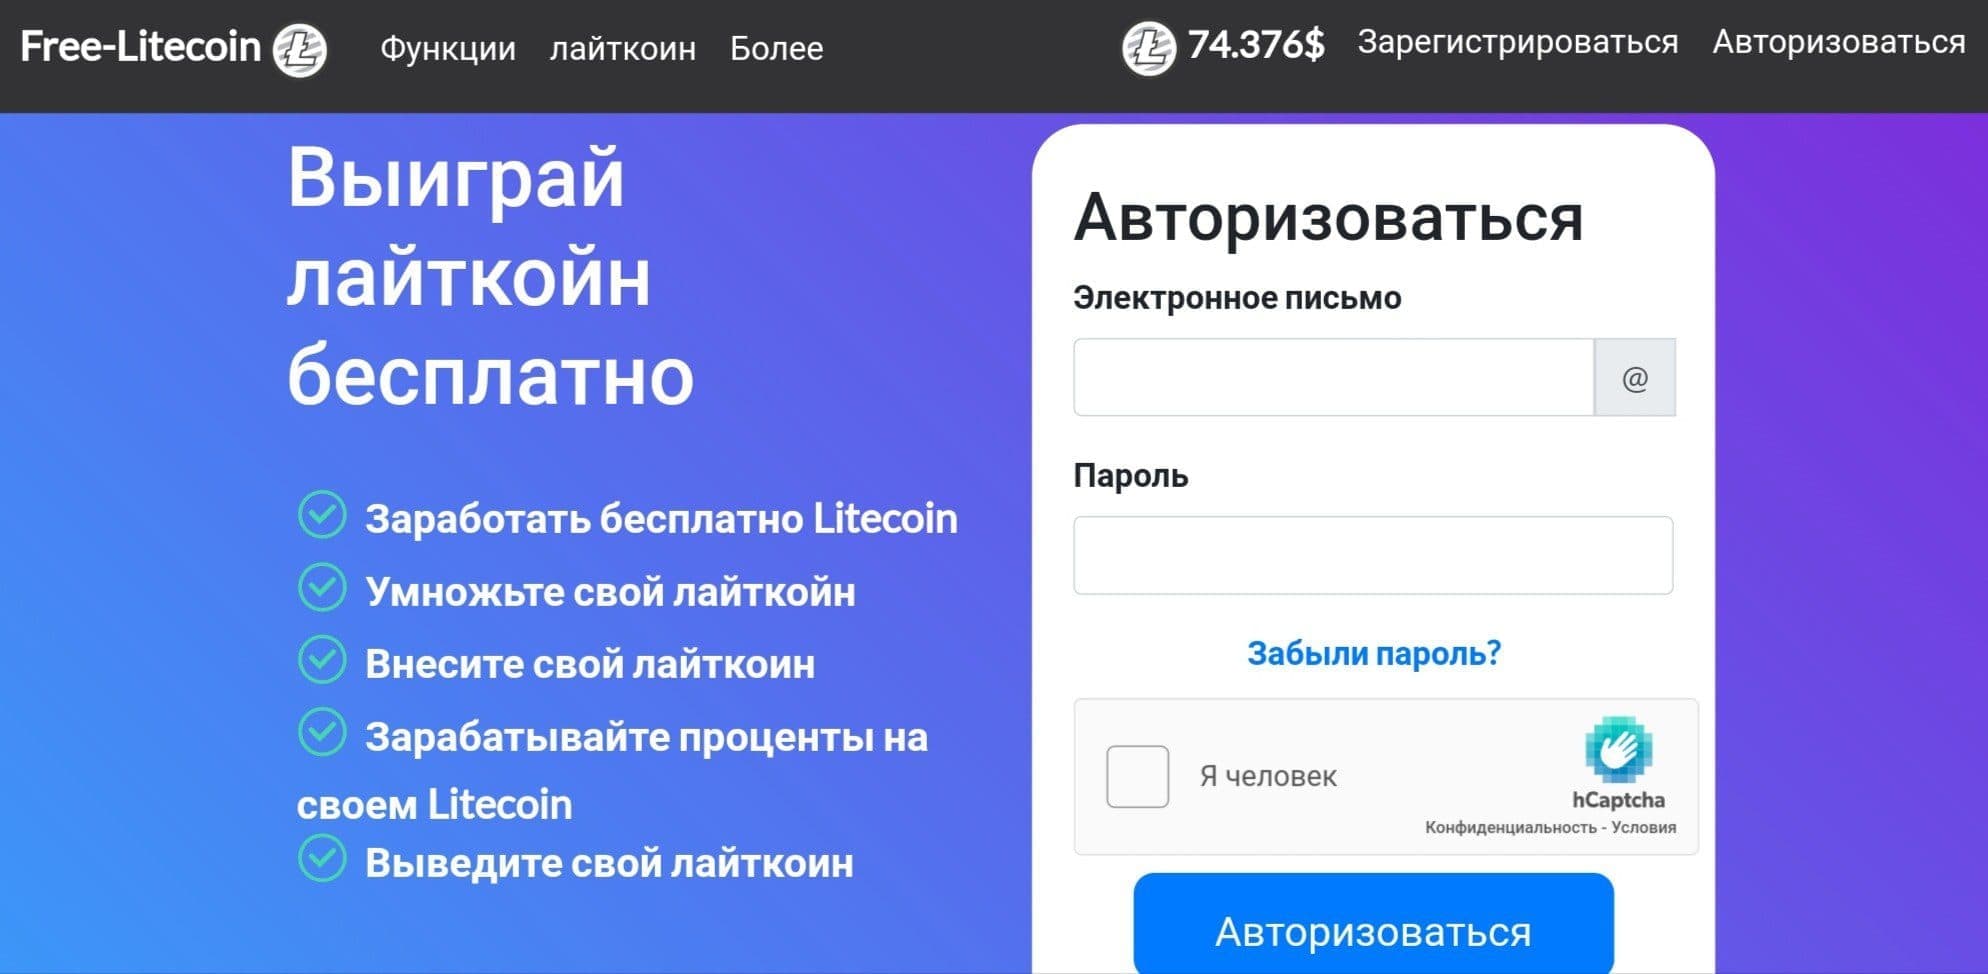 Free Litecoin проект обзор